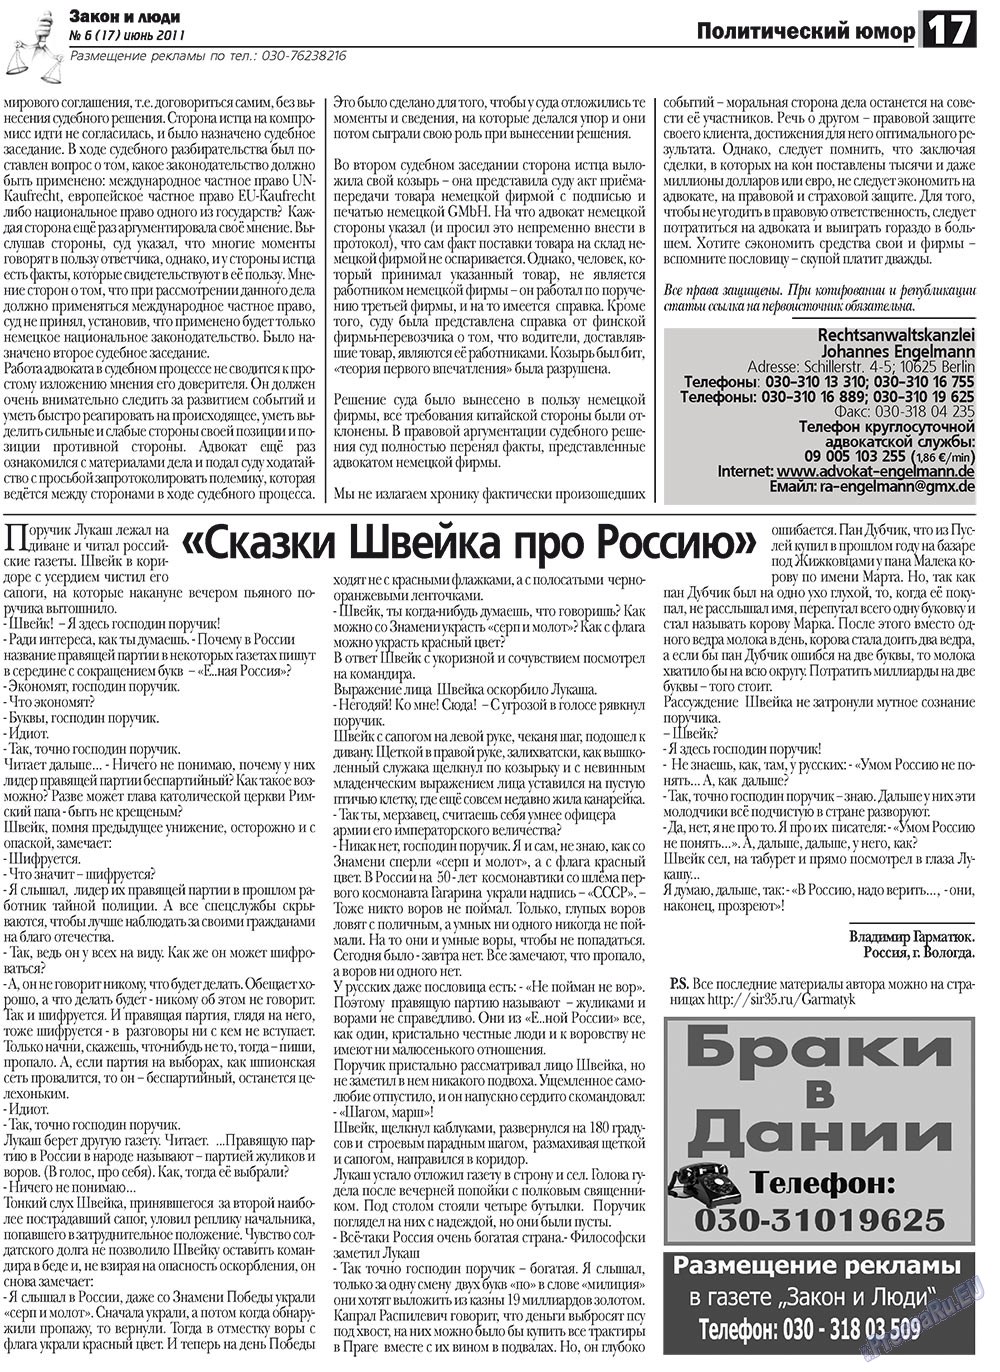 Закон и люди, газета. 2011 №6 стр.17